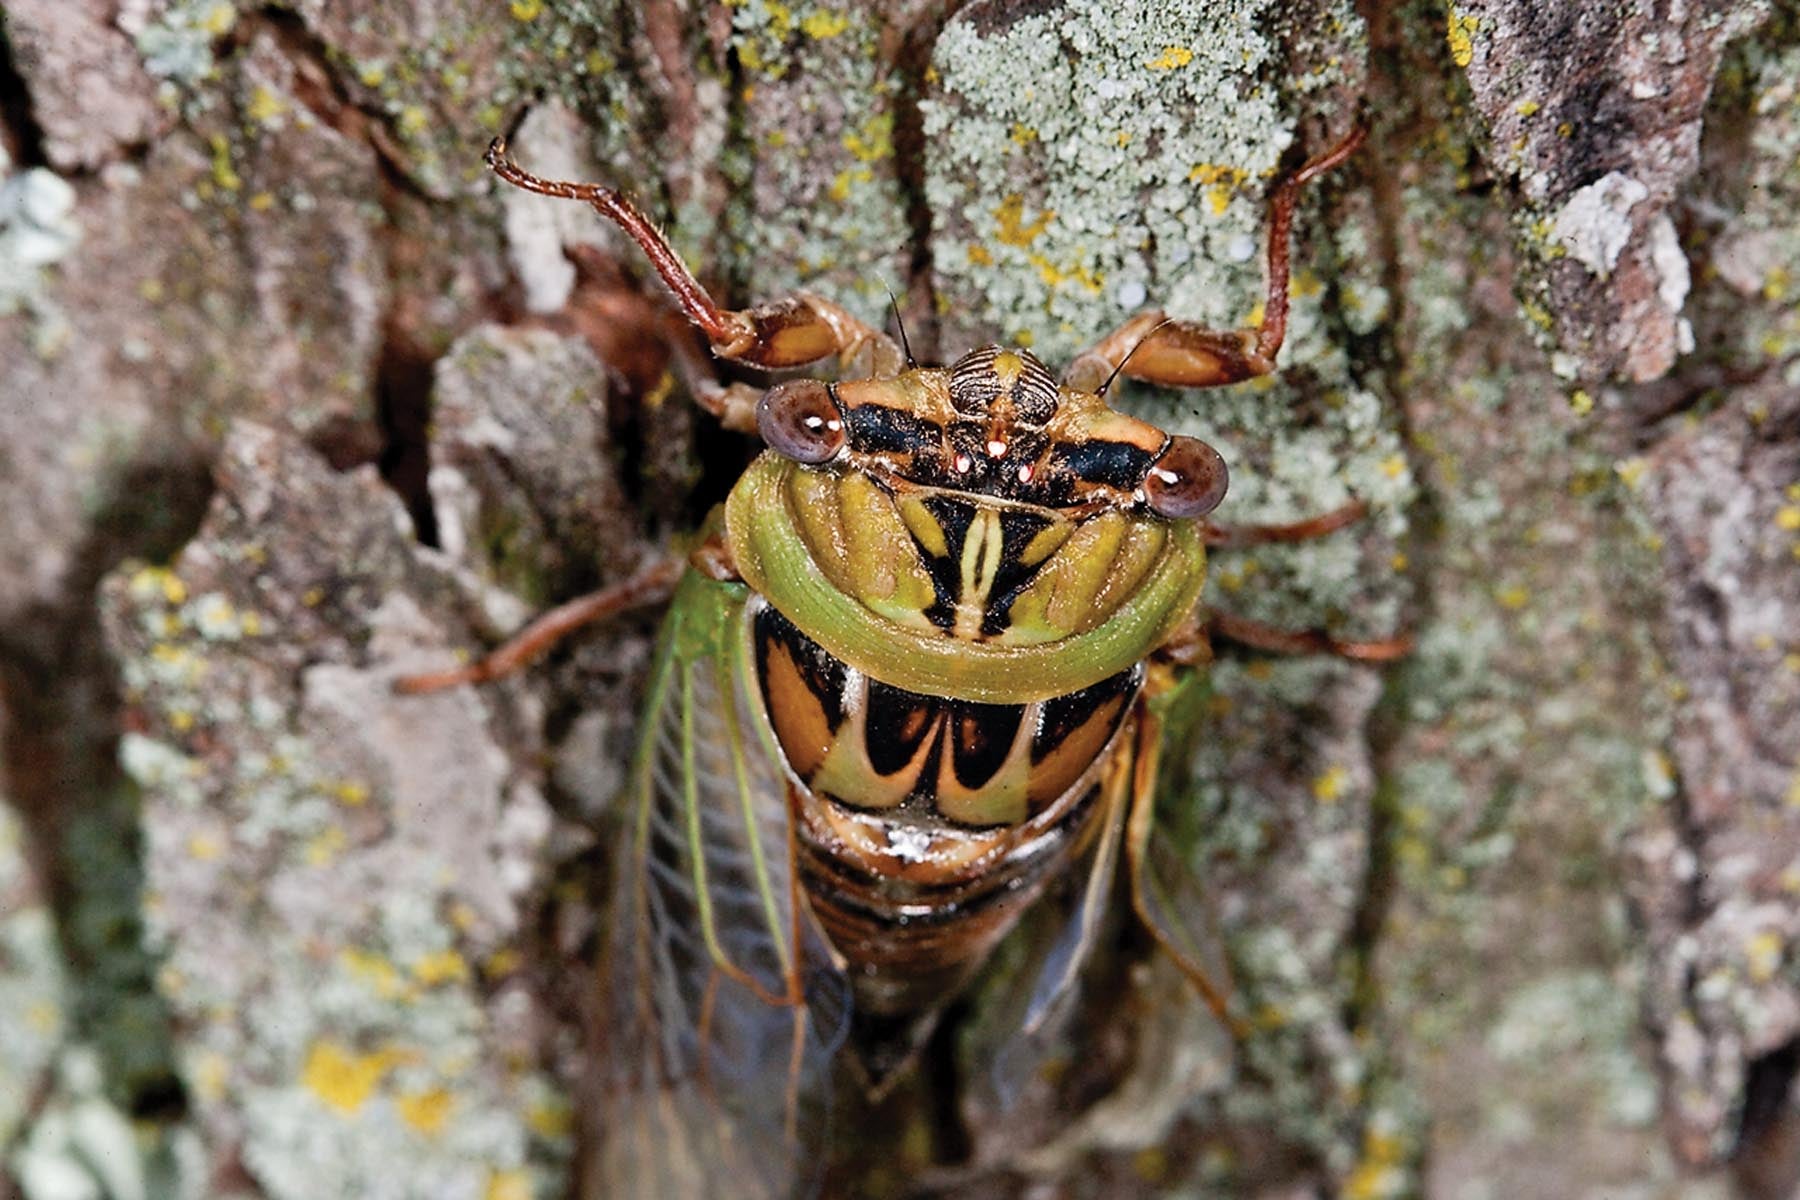 MDC Creature Feature Missouri’s annual cicadas Missouri Department